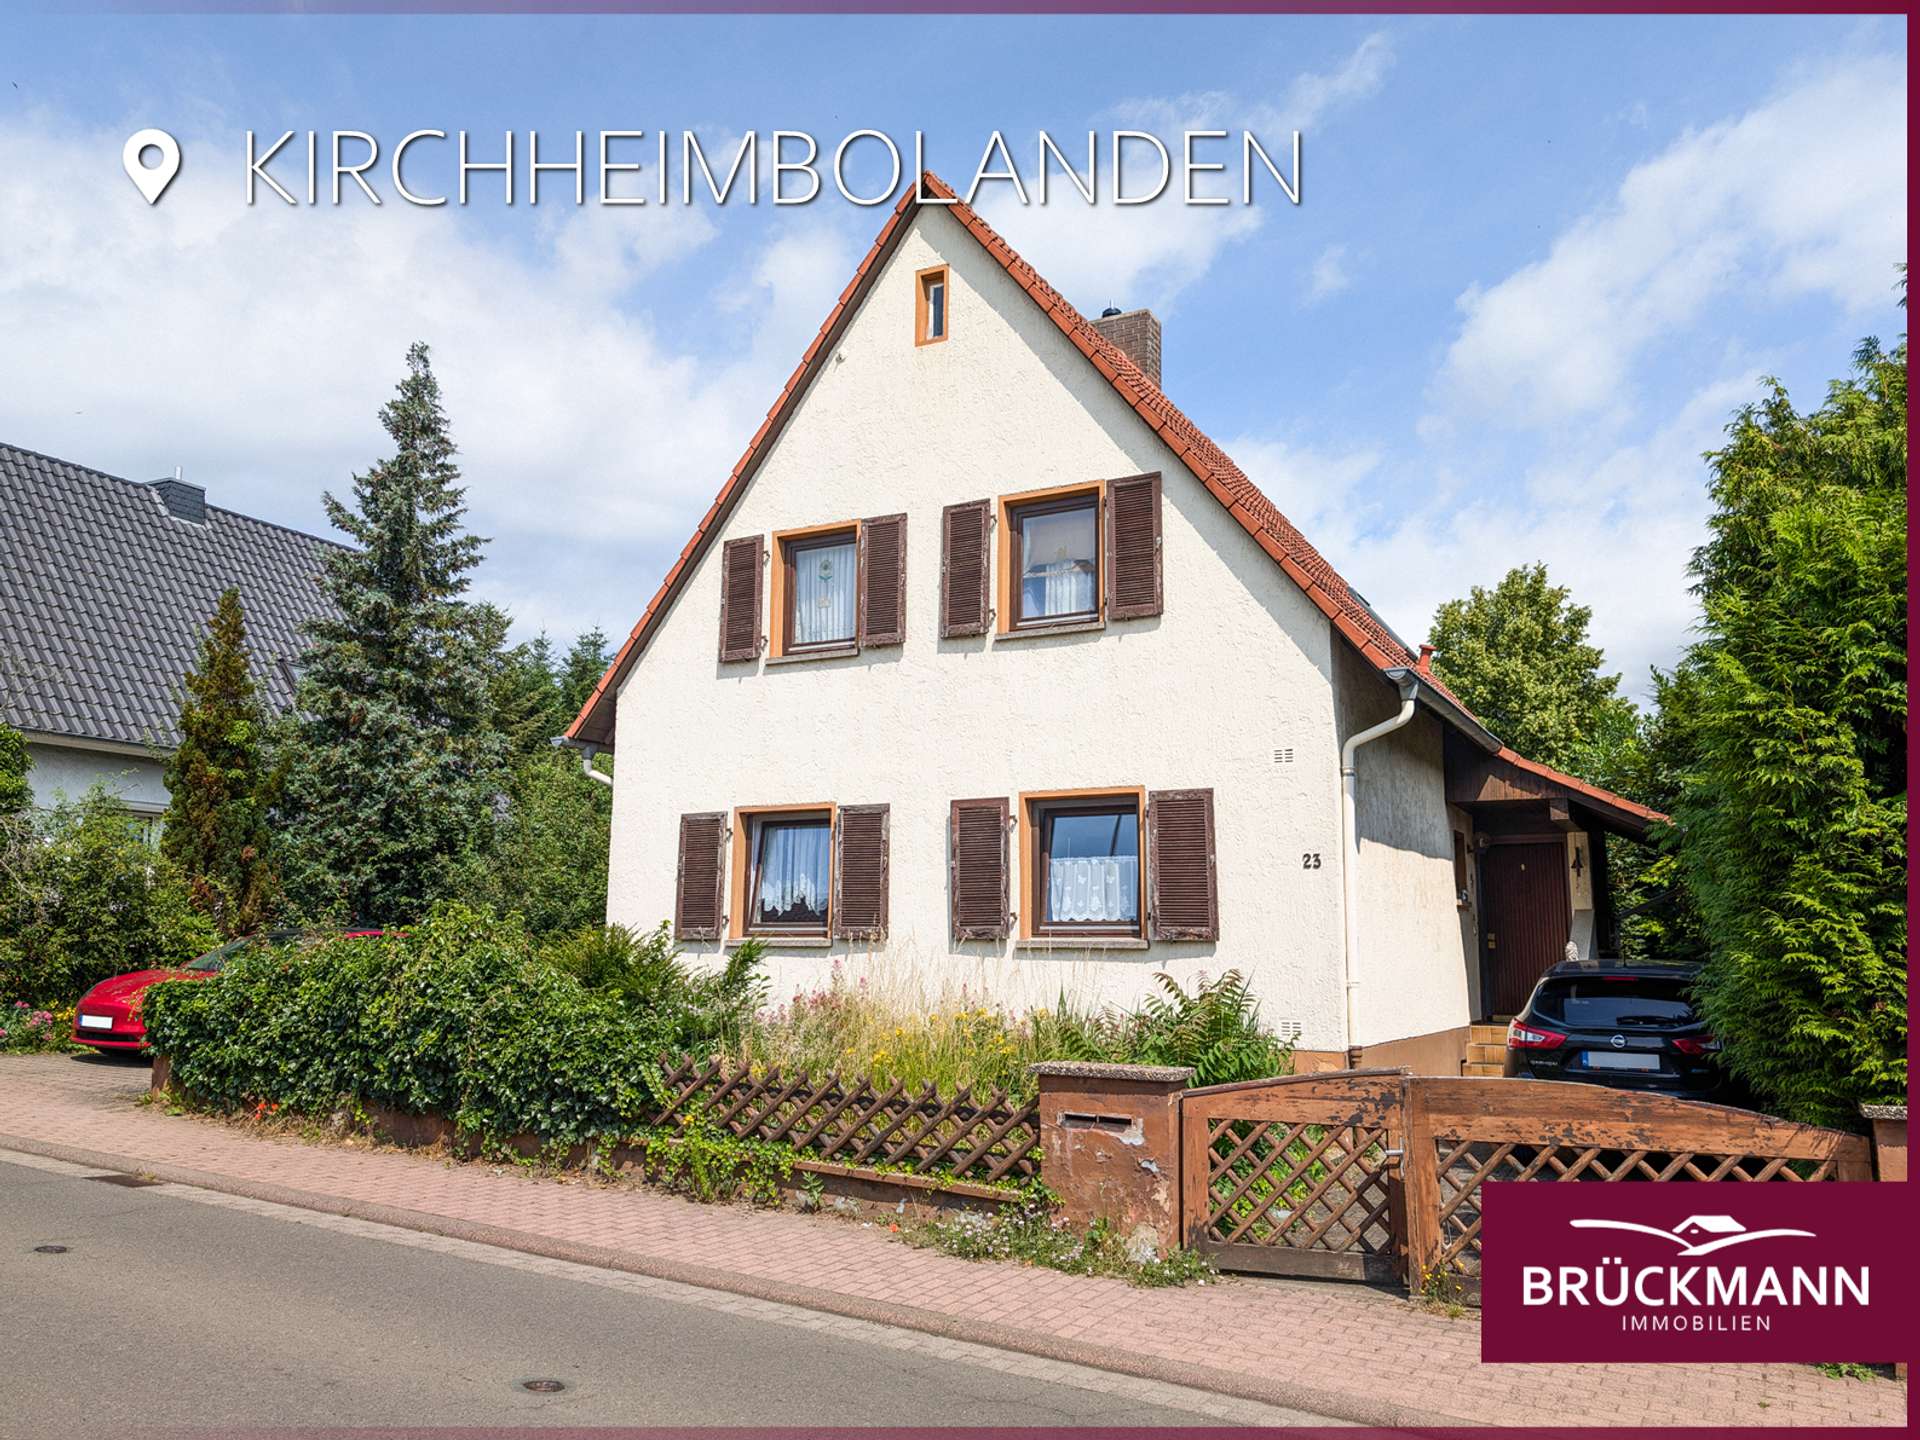 Freistehendes EFH mit Garten im Herzen von Kirchheimbolanden, 67292 Kirchheimbolanden, Einfamilienhaus